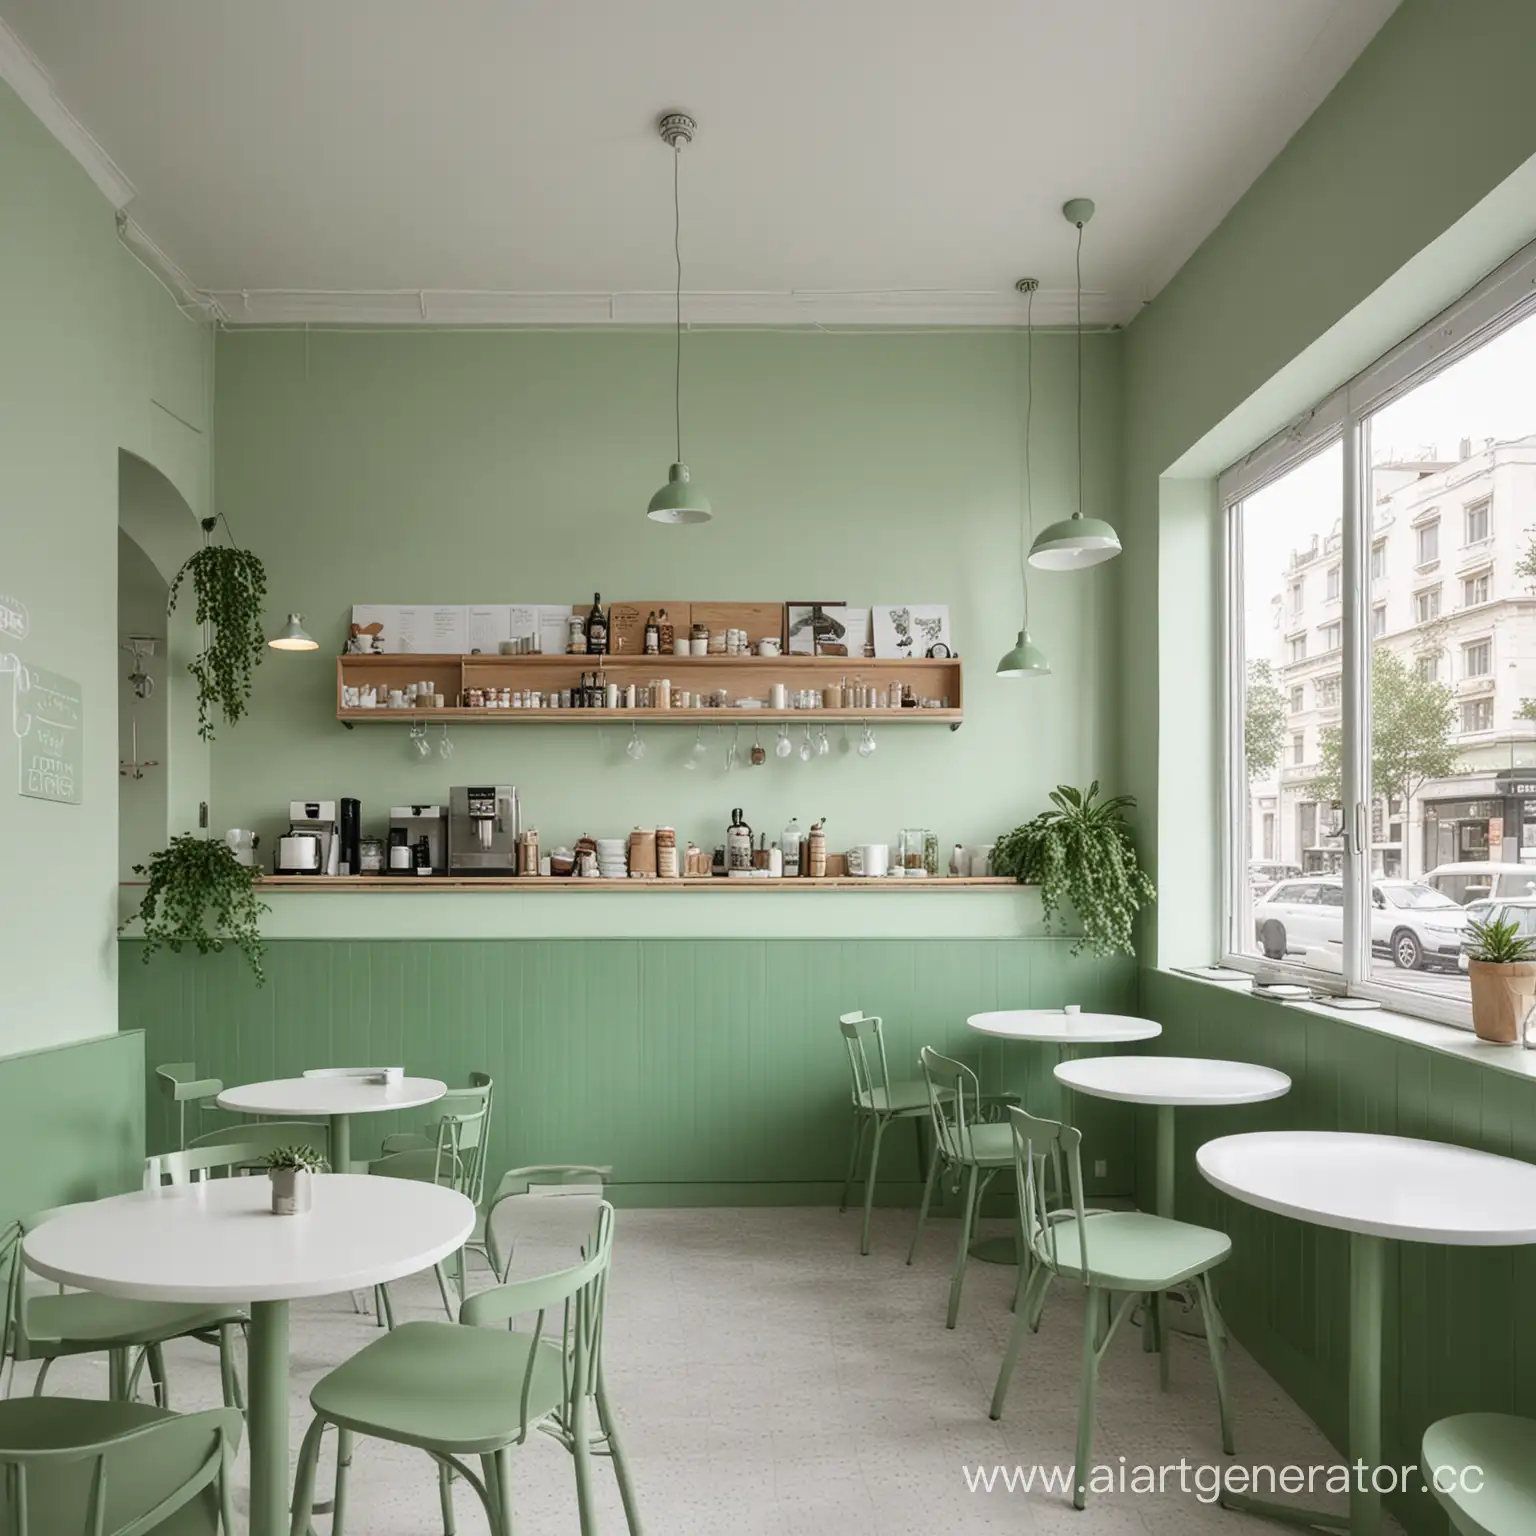 кафе в бело-зелёных тонах, хороший дизайн, промо-фото внутри